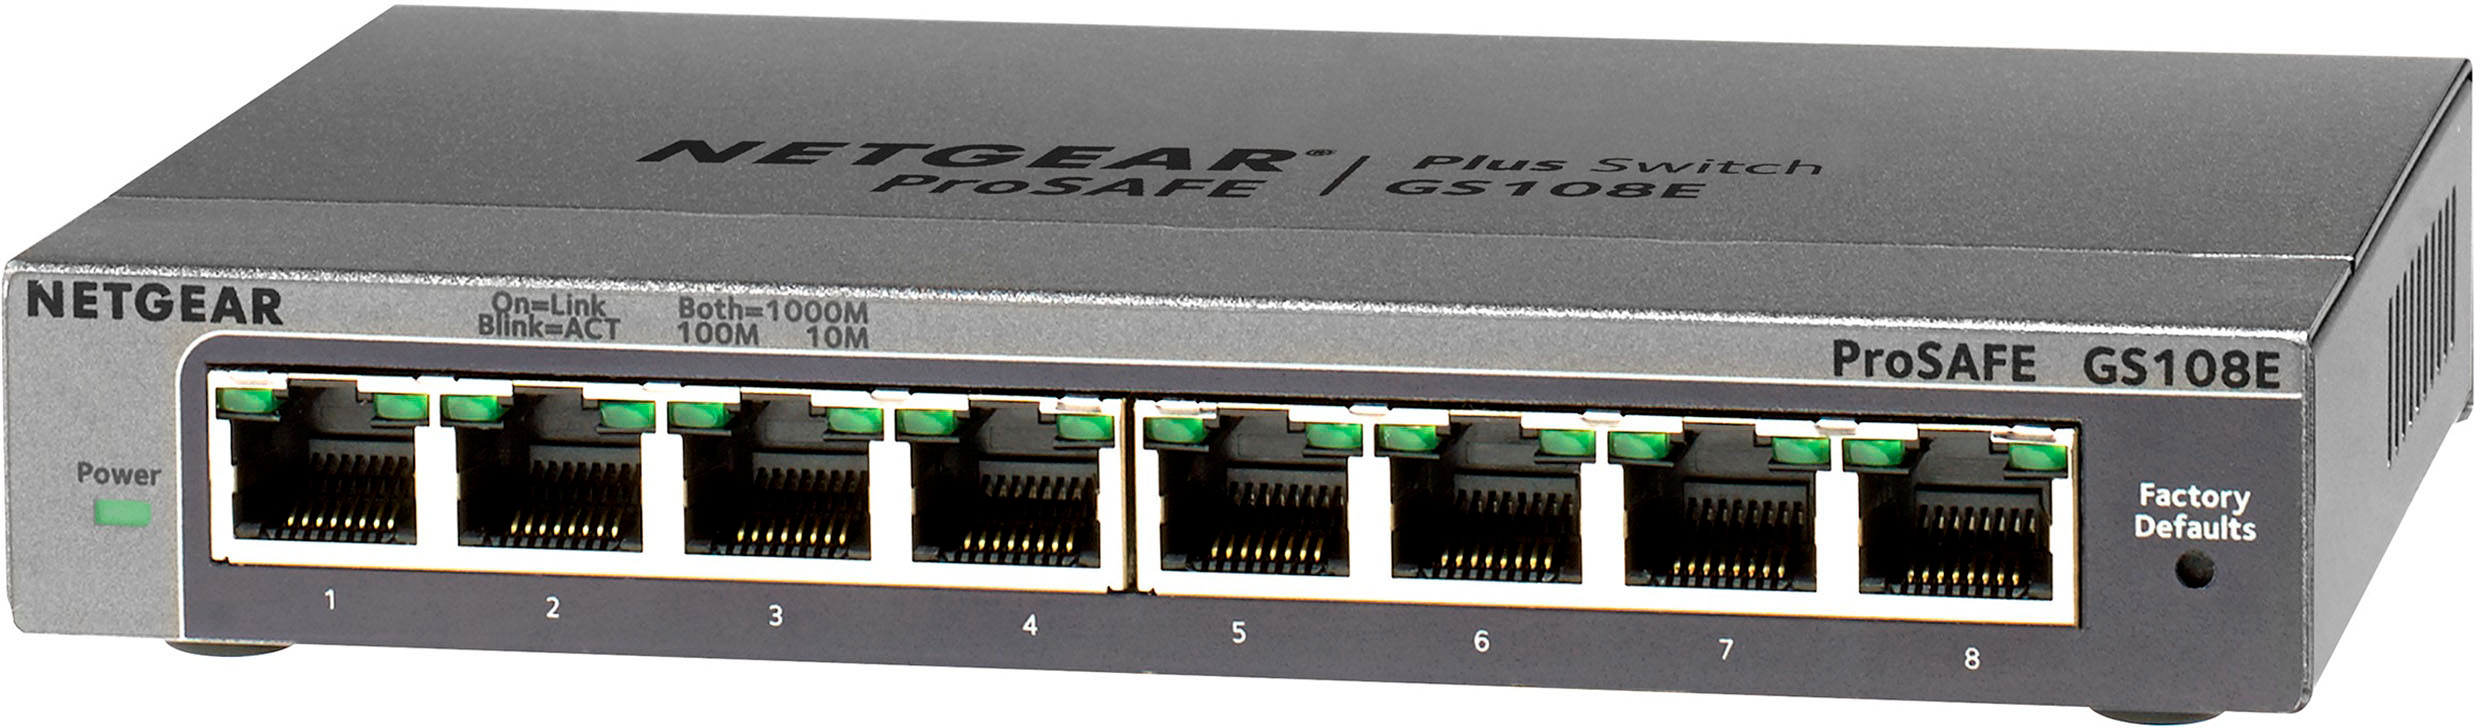 Left View: TP-Link - 24-Port 10/100/1000 Mbps Gigabit Ethernet Switch - Gray